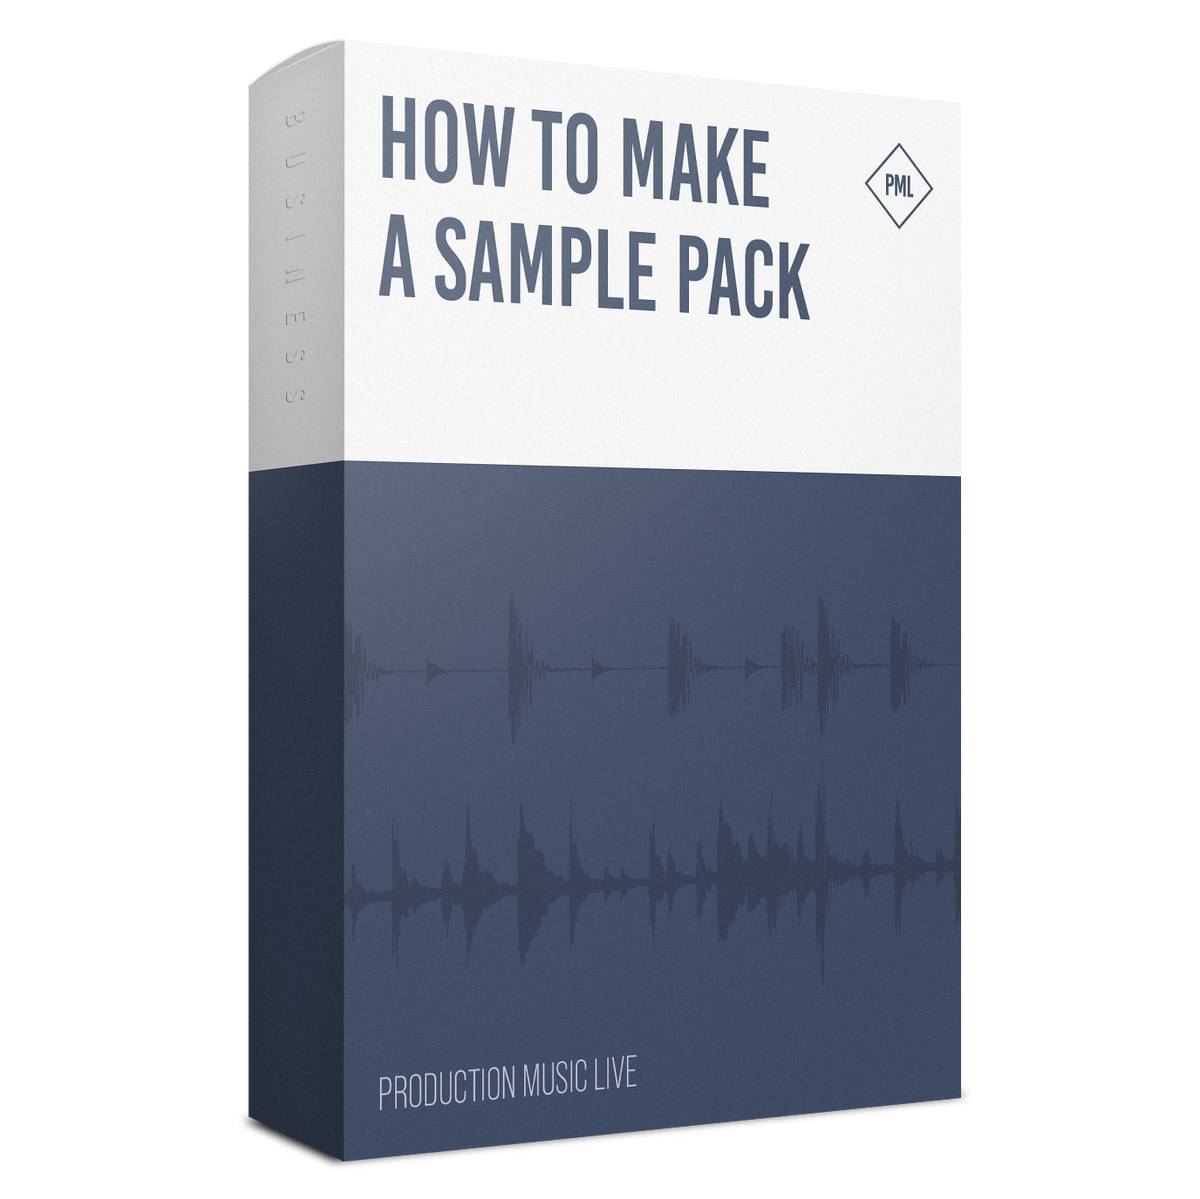 Professional sample packs